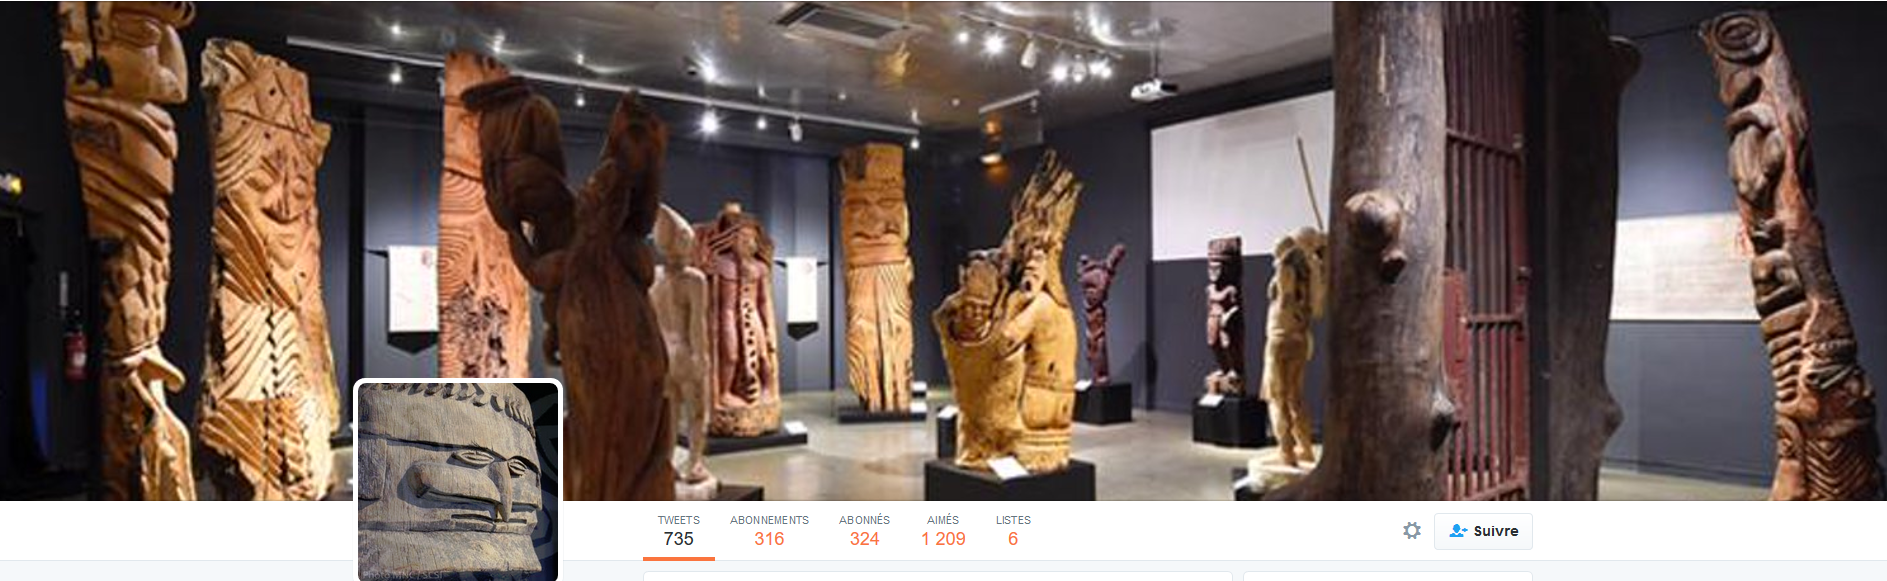 FireShot Screen Capture #152 - 'Musée de NC (@MuseedeNC) I Twitter' - twitter_com_MuseedeNC